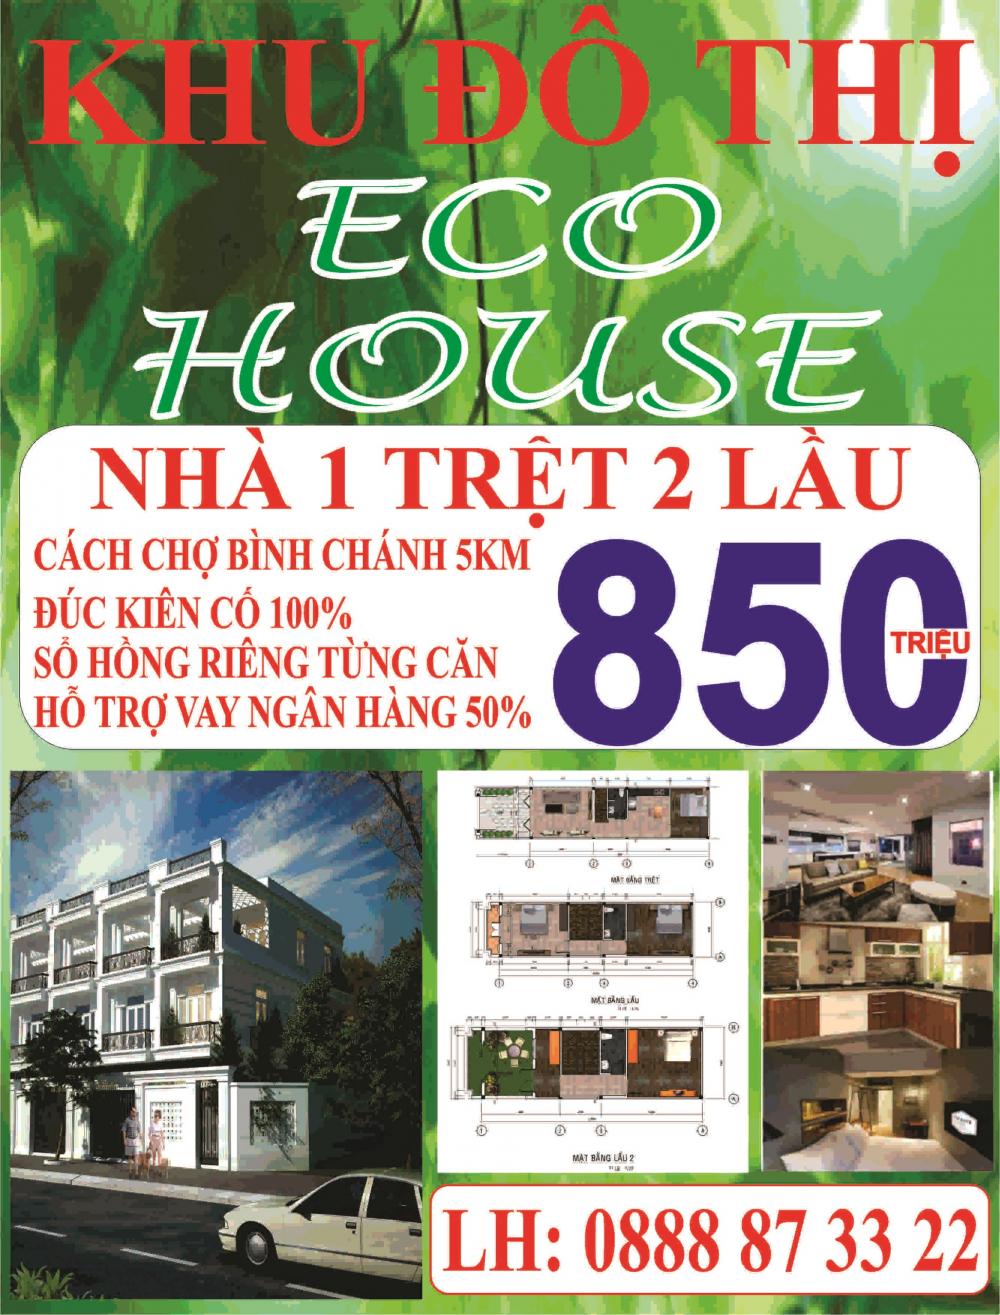 KDC Eco House - Dự án vàng cho nhà đầu tư tại khu Tây thành phố HCM